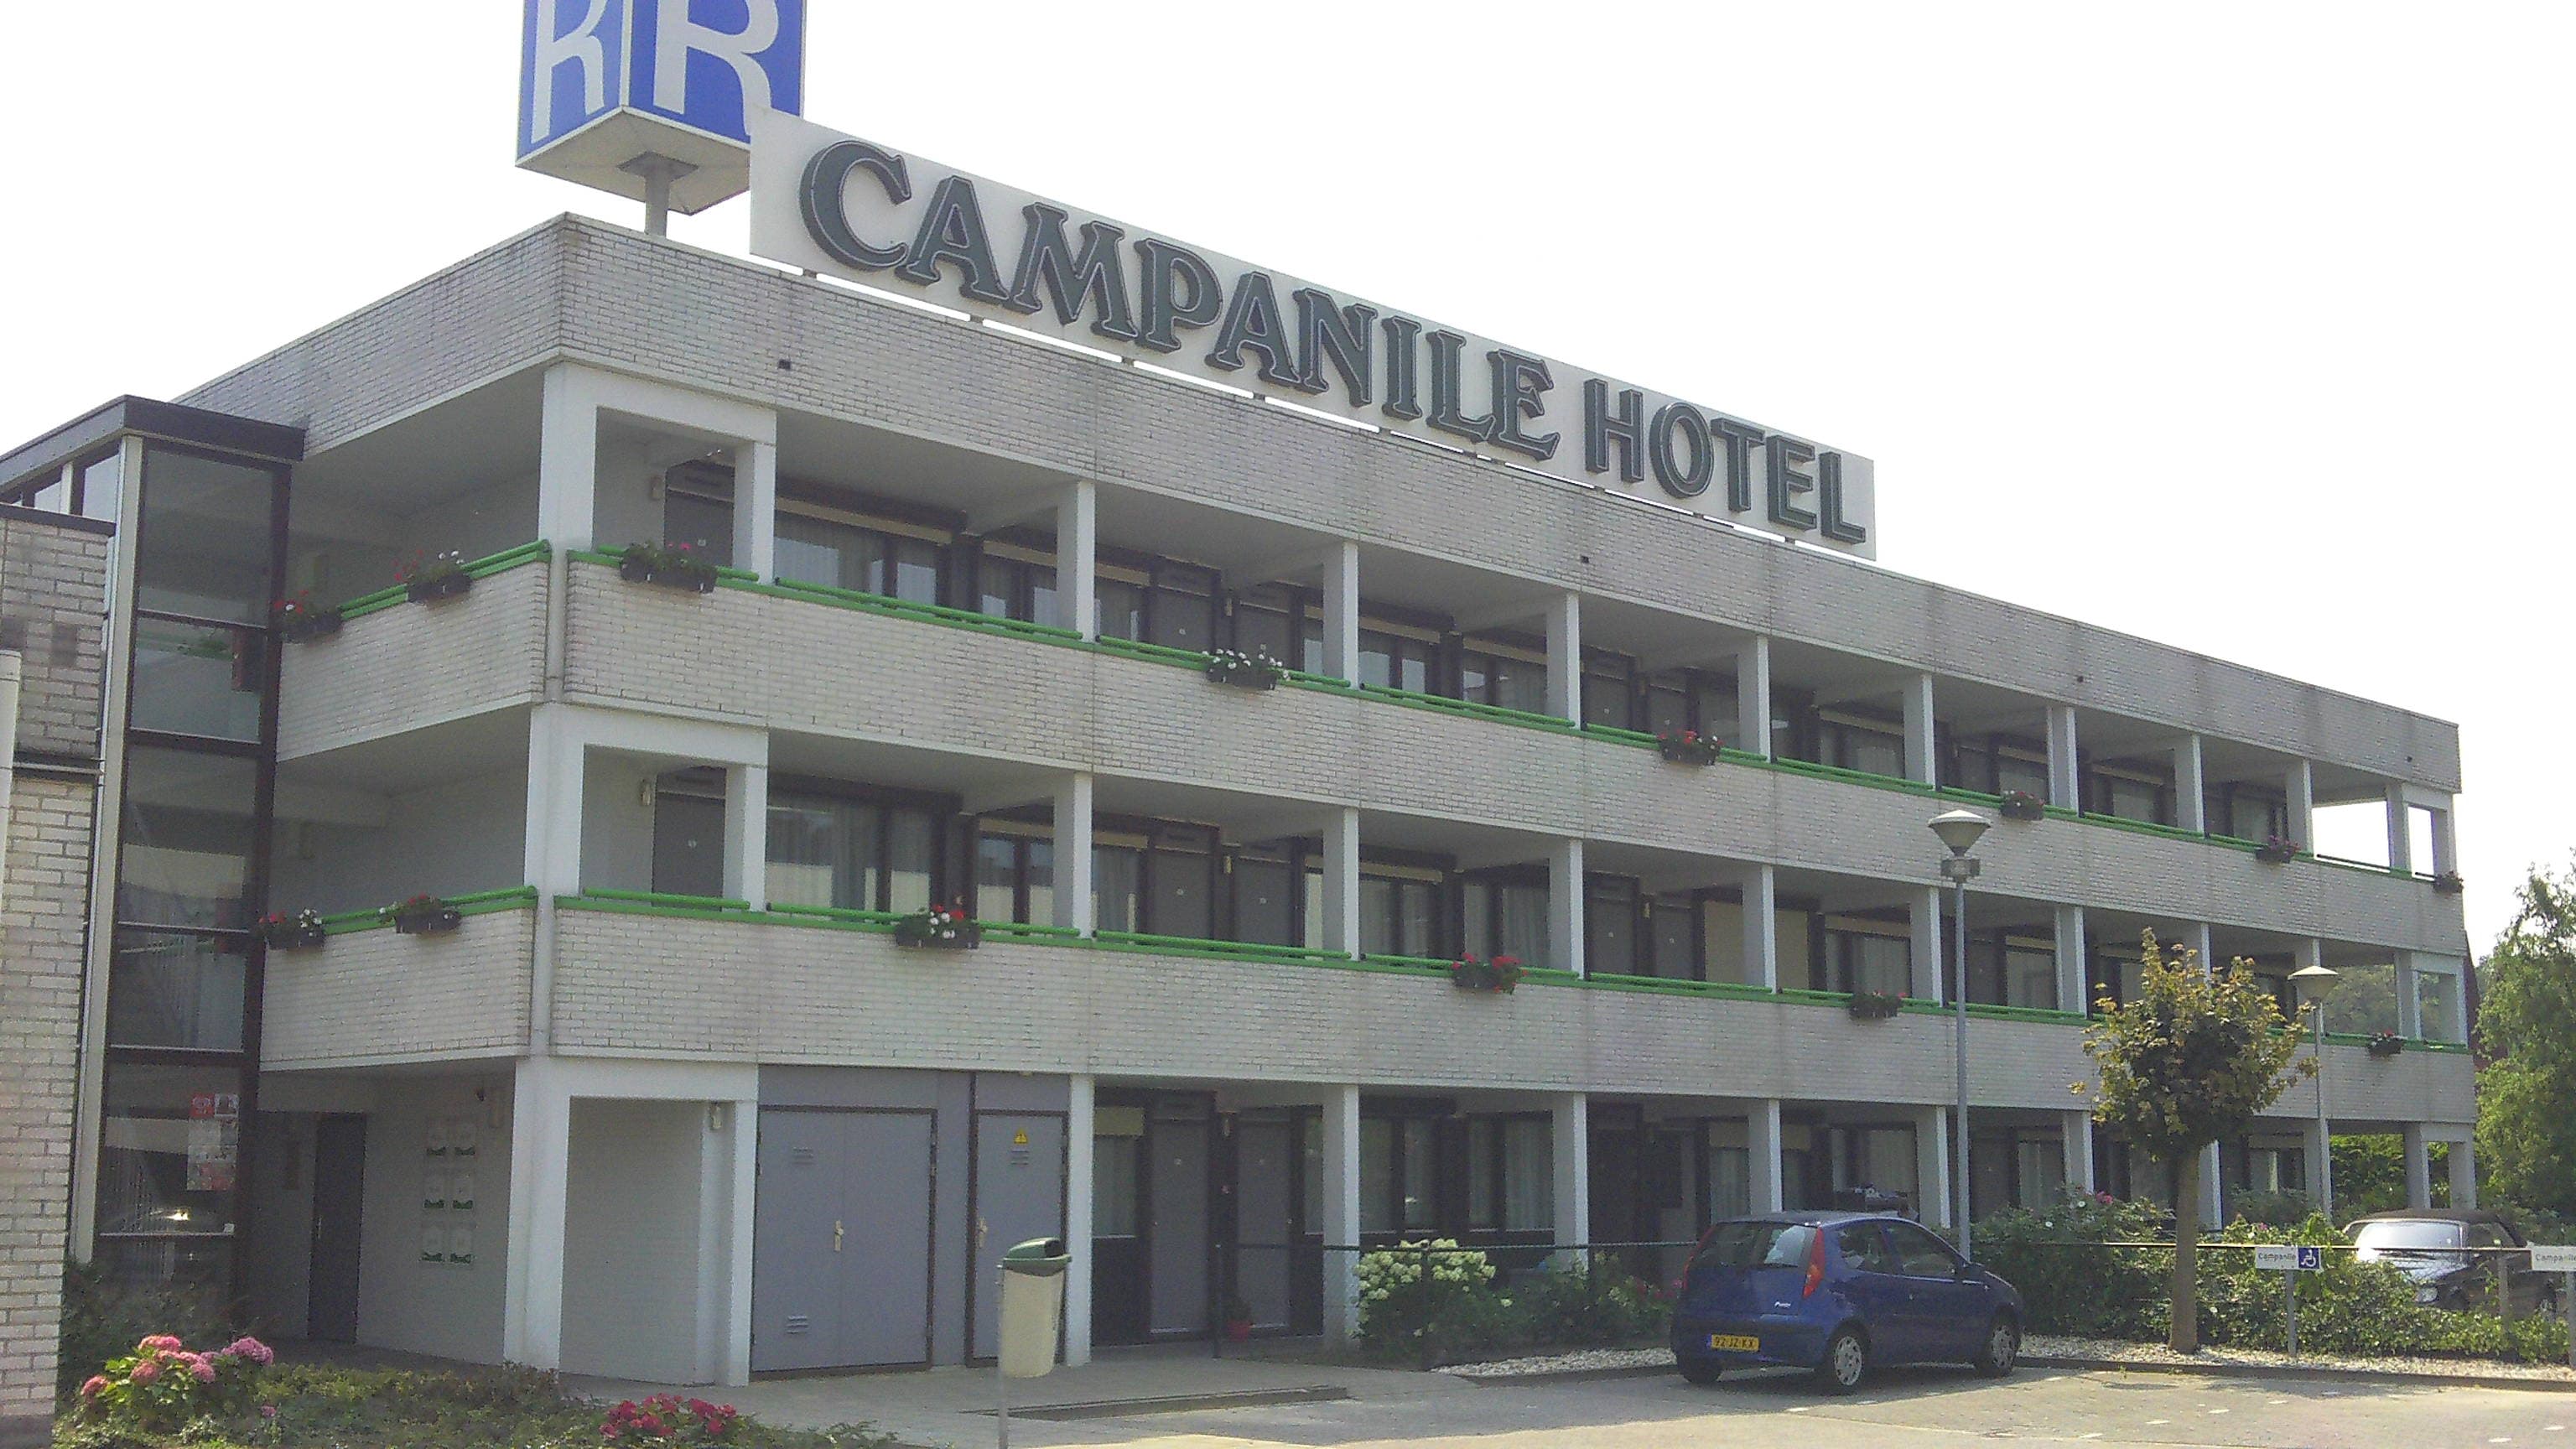 Hotel Gril Campanile Venlo